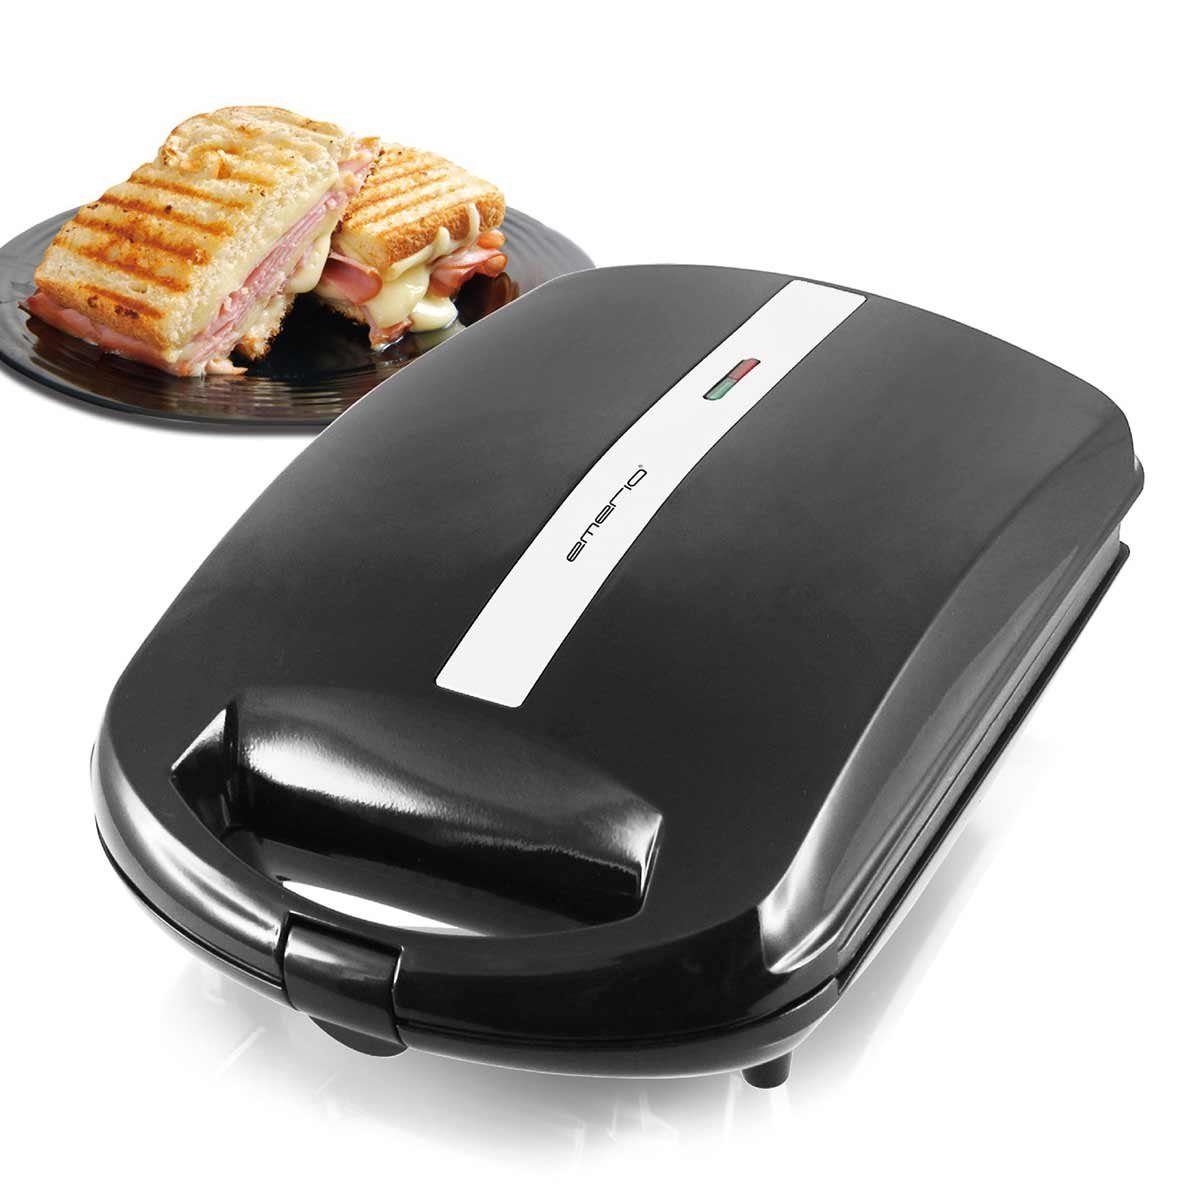 Scheiben Emerio 4 Sandwichmaker XXL-Sandwich-Toaster für W 1300 ST-111153 Toast,